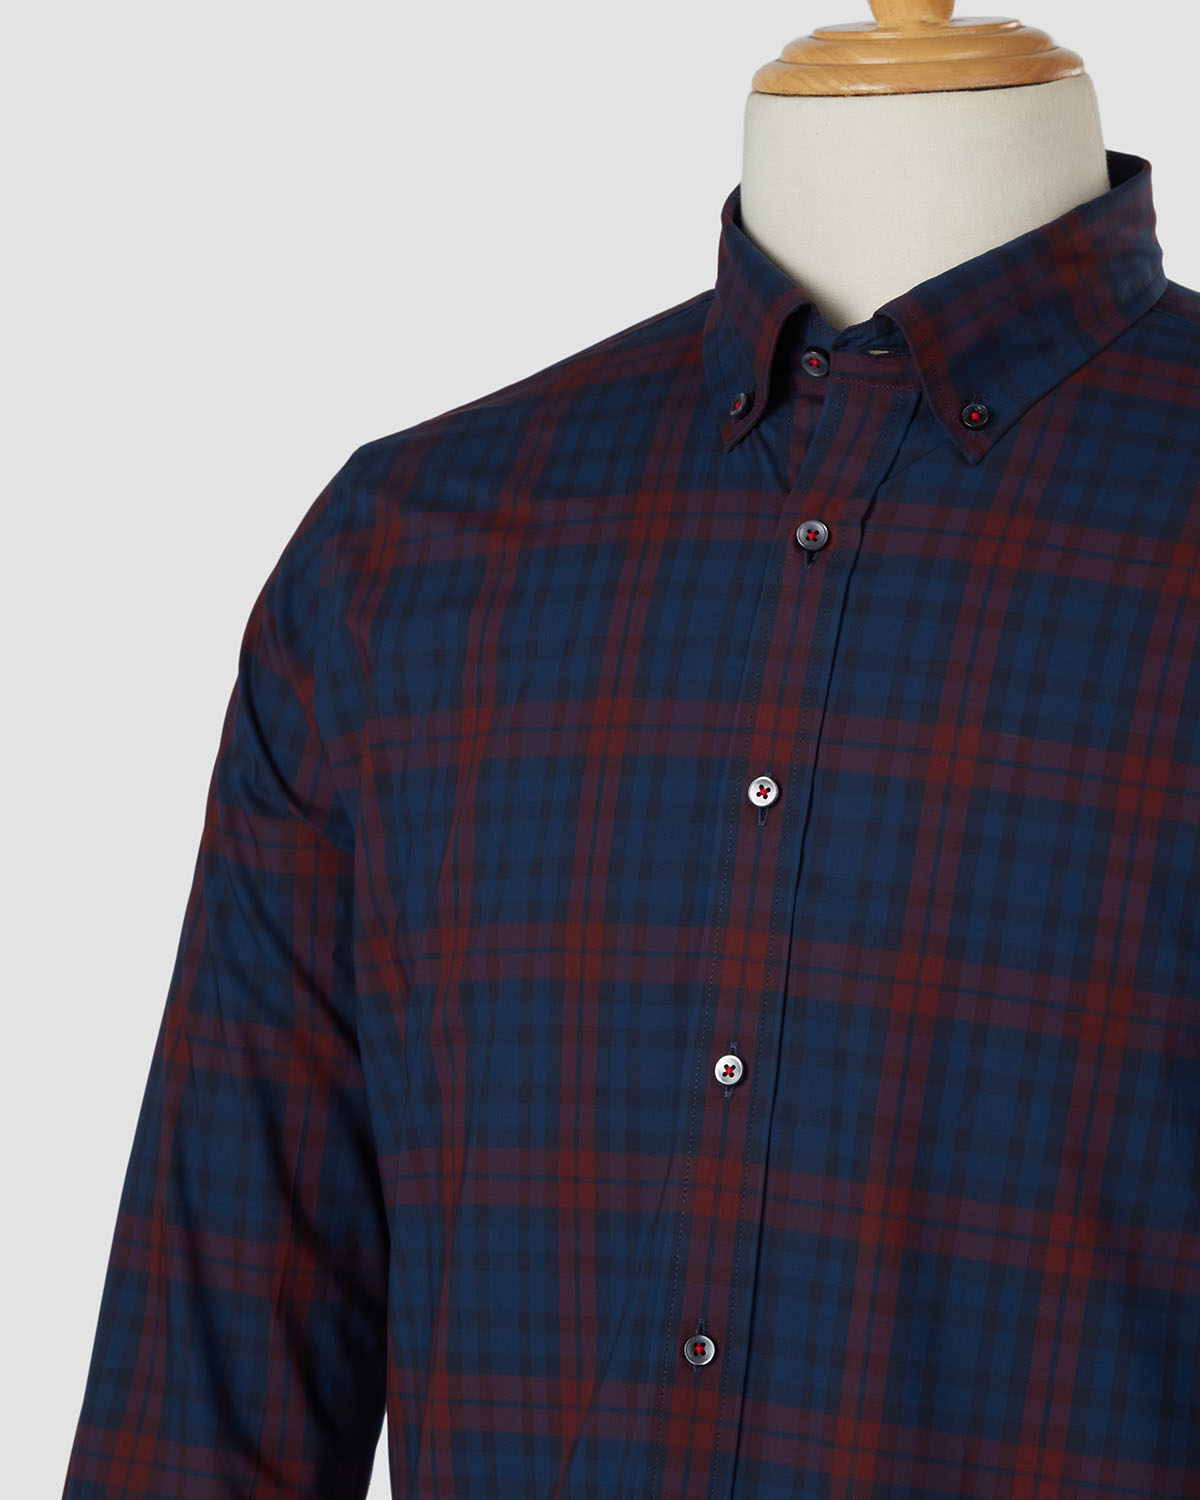 Bombay Shirt Company - Lumberjack Checked Shirt